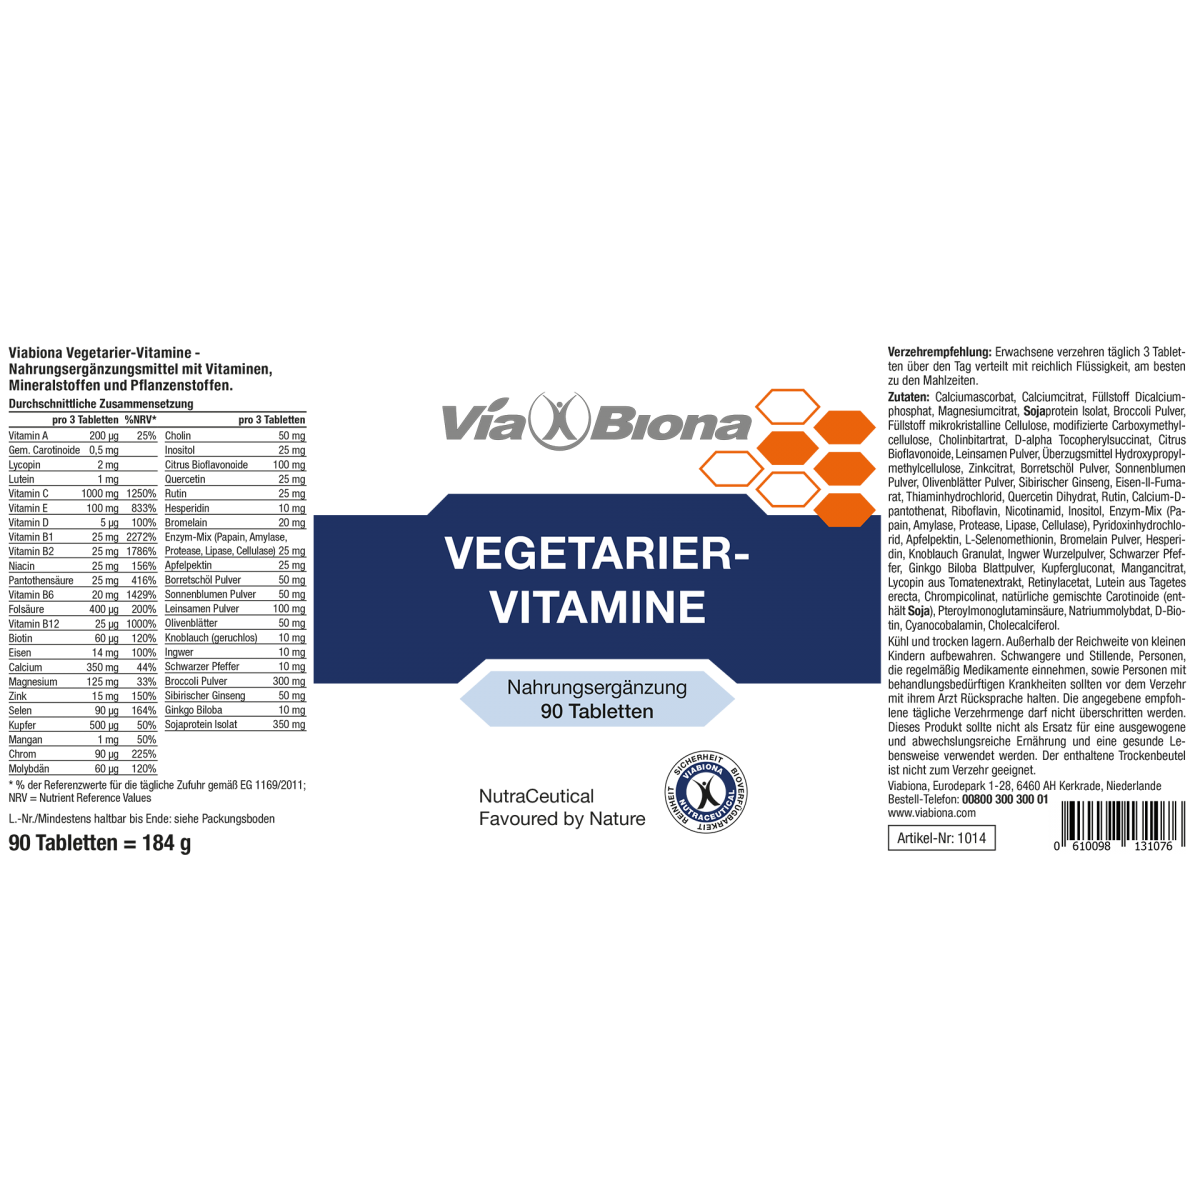 escaleren moreel Installeren Vegetarier-Vitamine-Tabletten » online kaufen | Viabiona